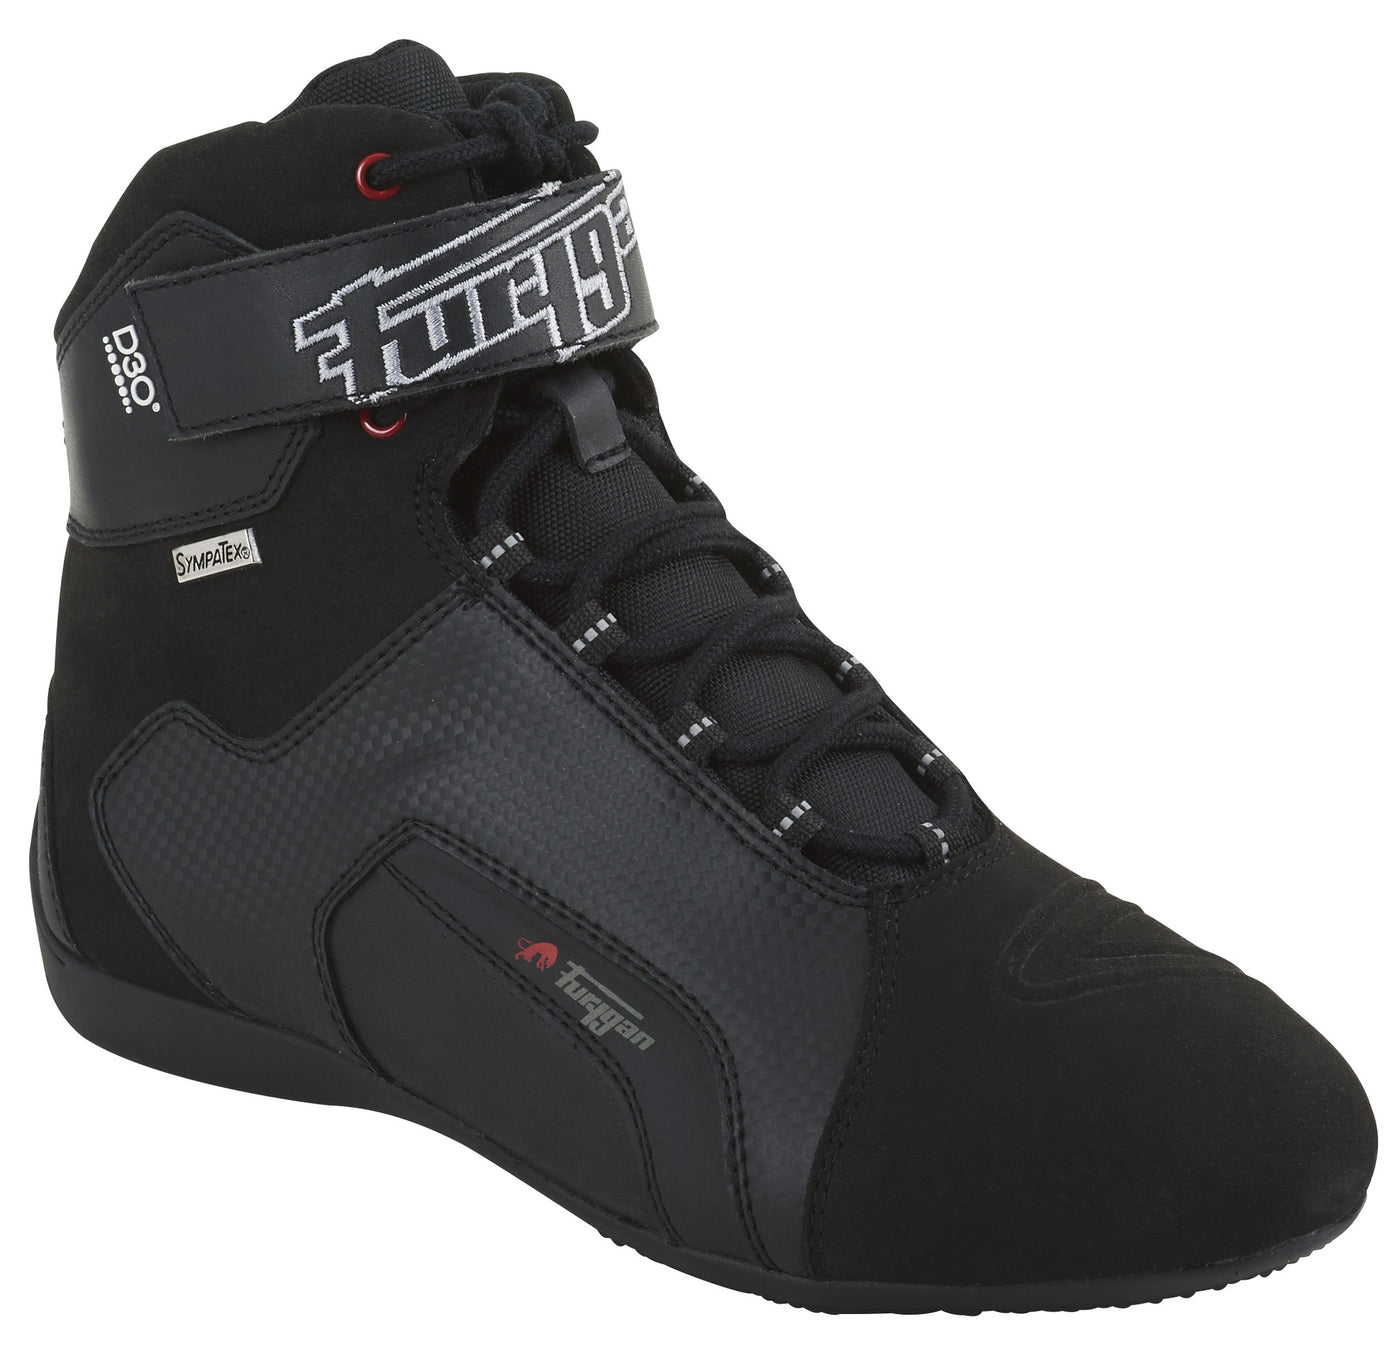 Furygan Sympatex JET D30 Sneakers - Black